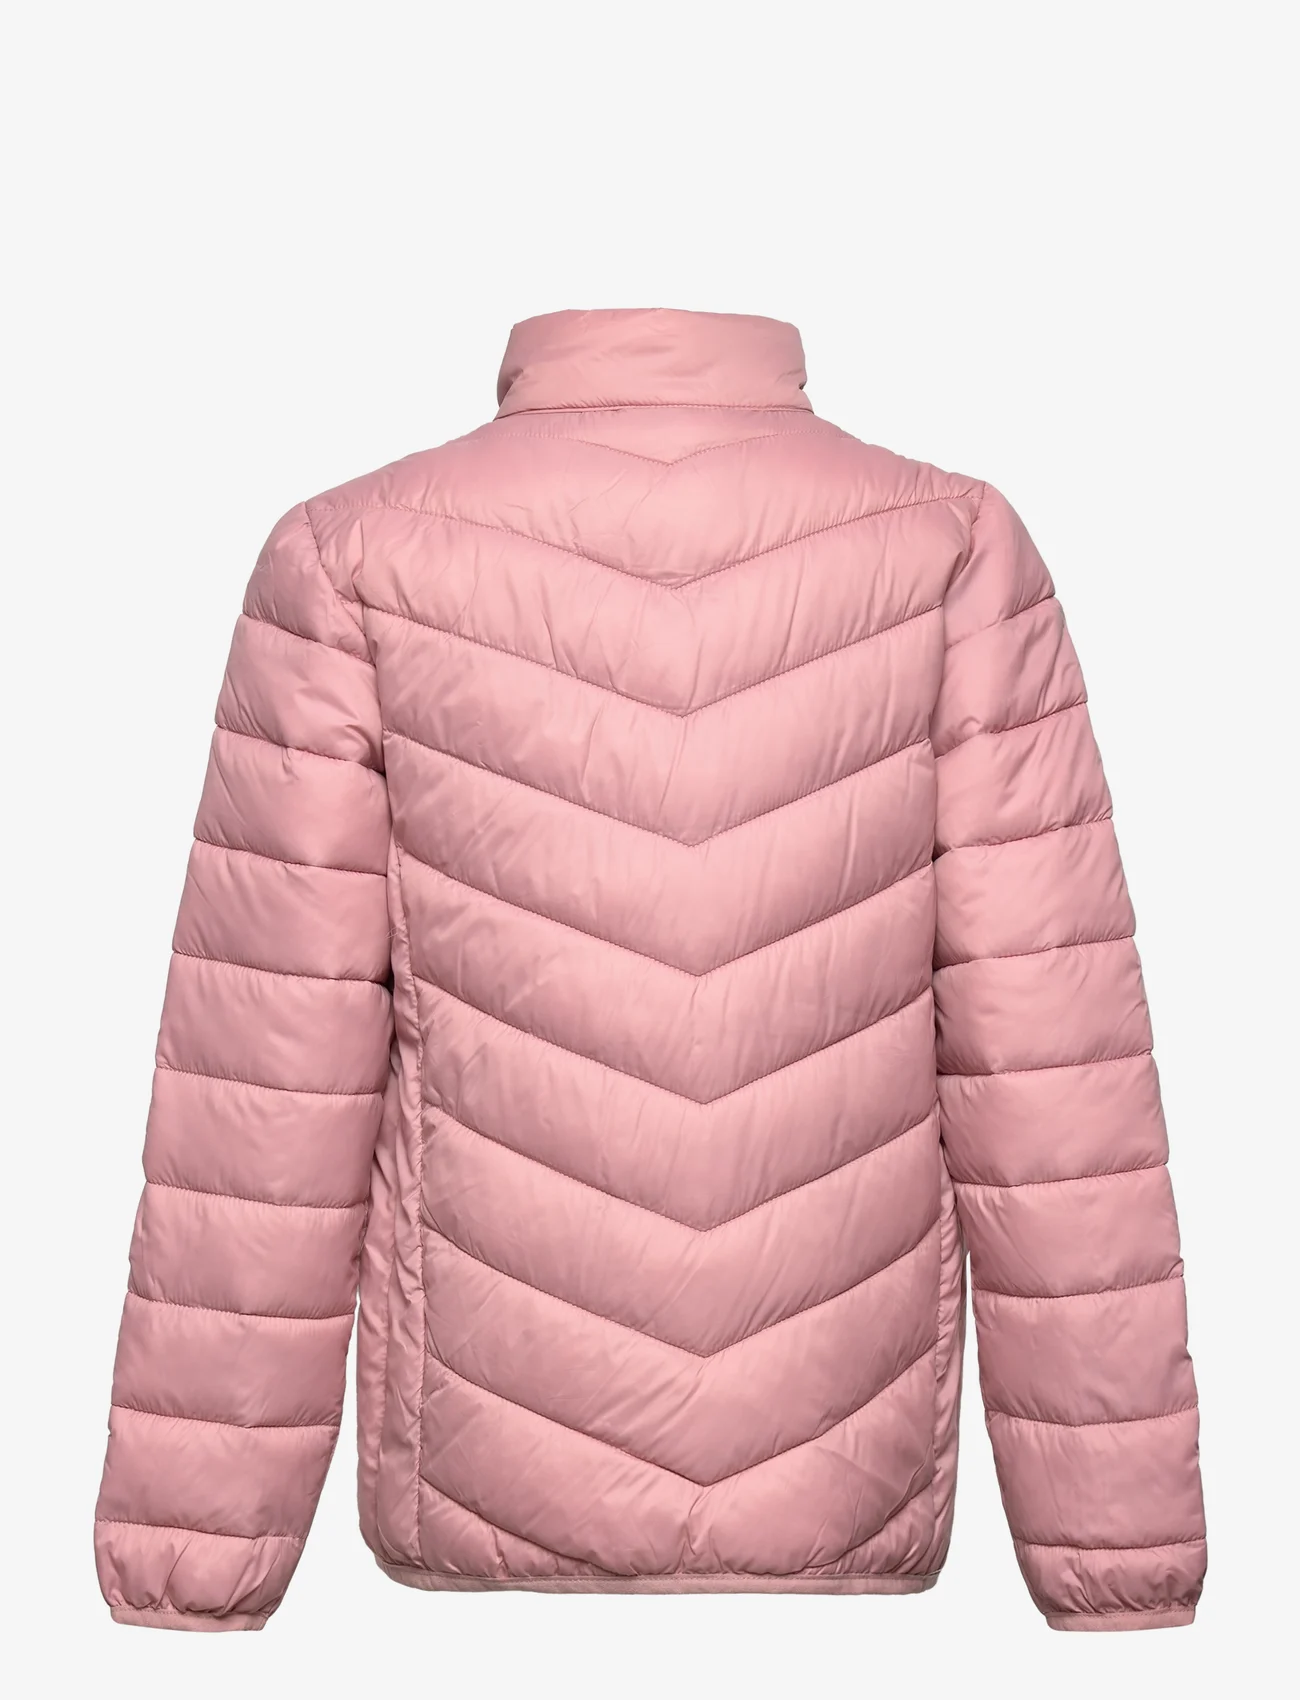 Color Kids - Jacket, quilted, packable - laveste priser - zephyr - 1